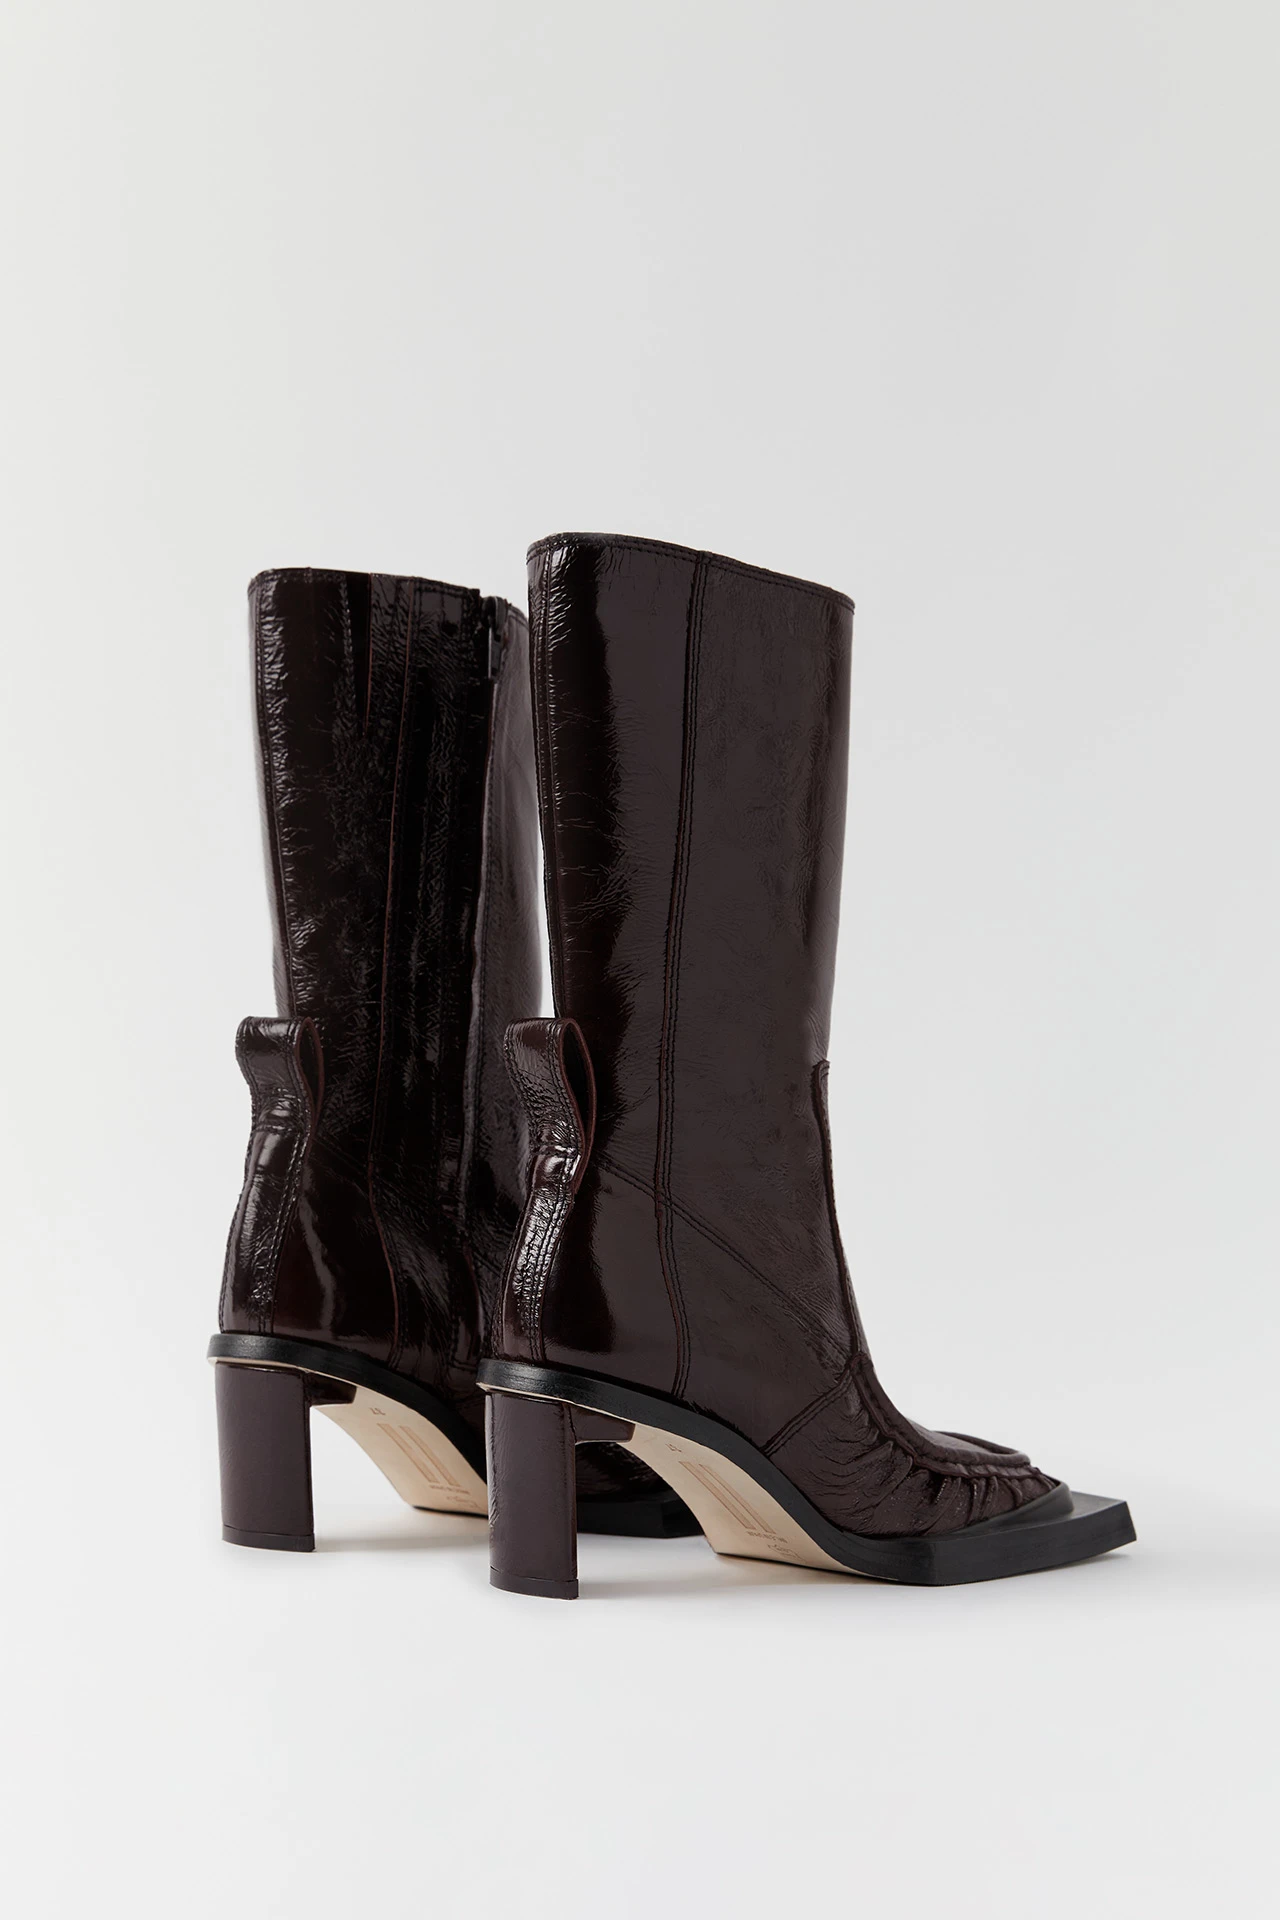 miista-miwa-brown-patent-boots-02